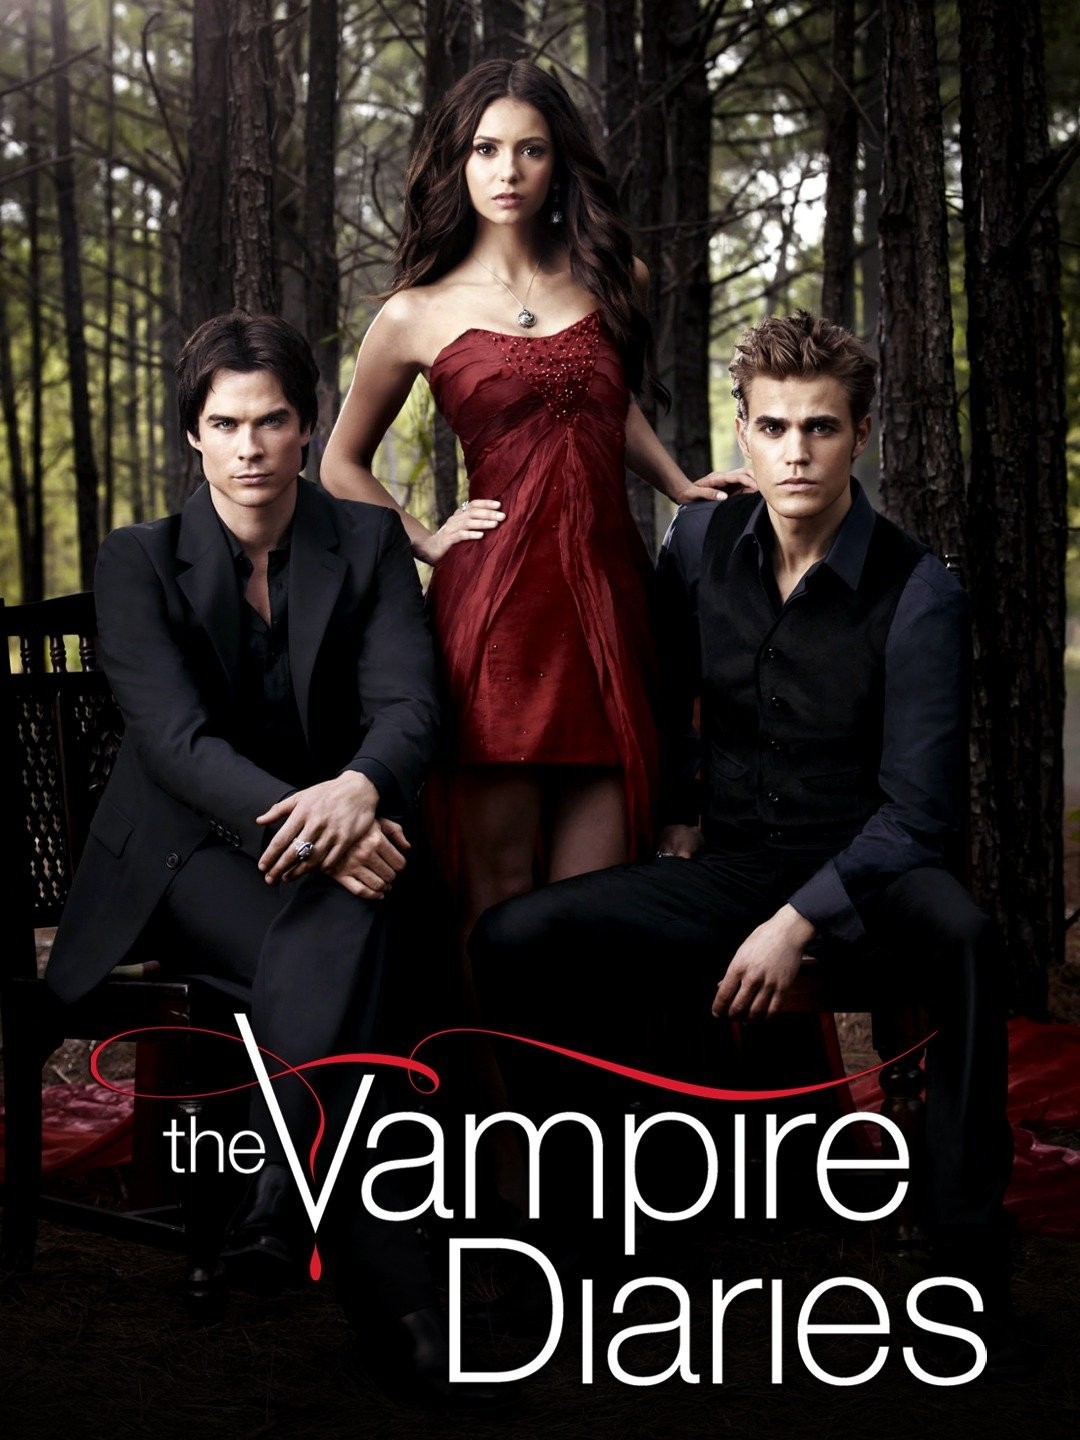 The Vampire Diaries Season 7 Episode 6 Recap: Alaric and Caroline